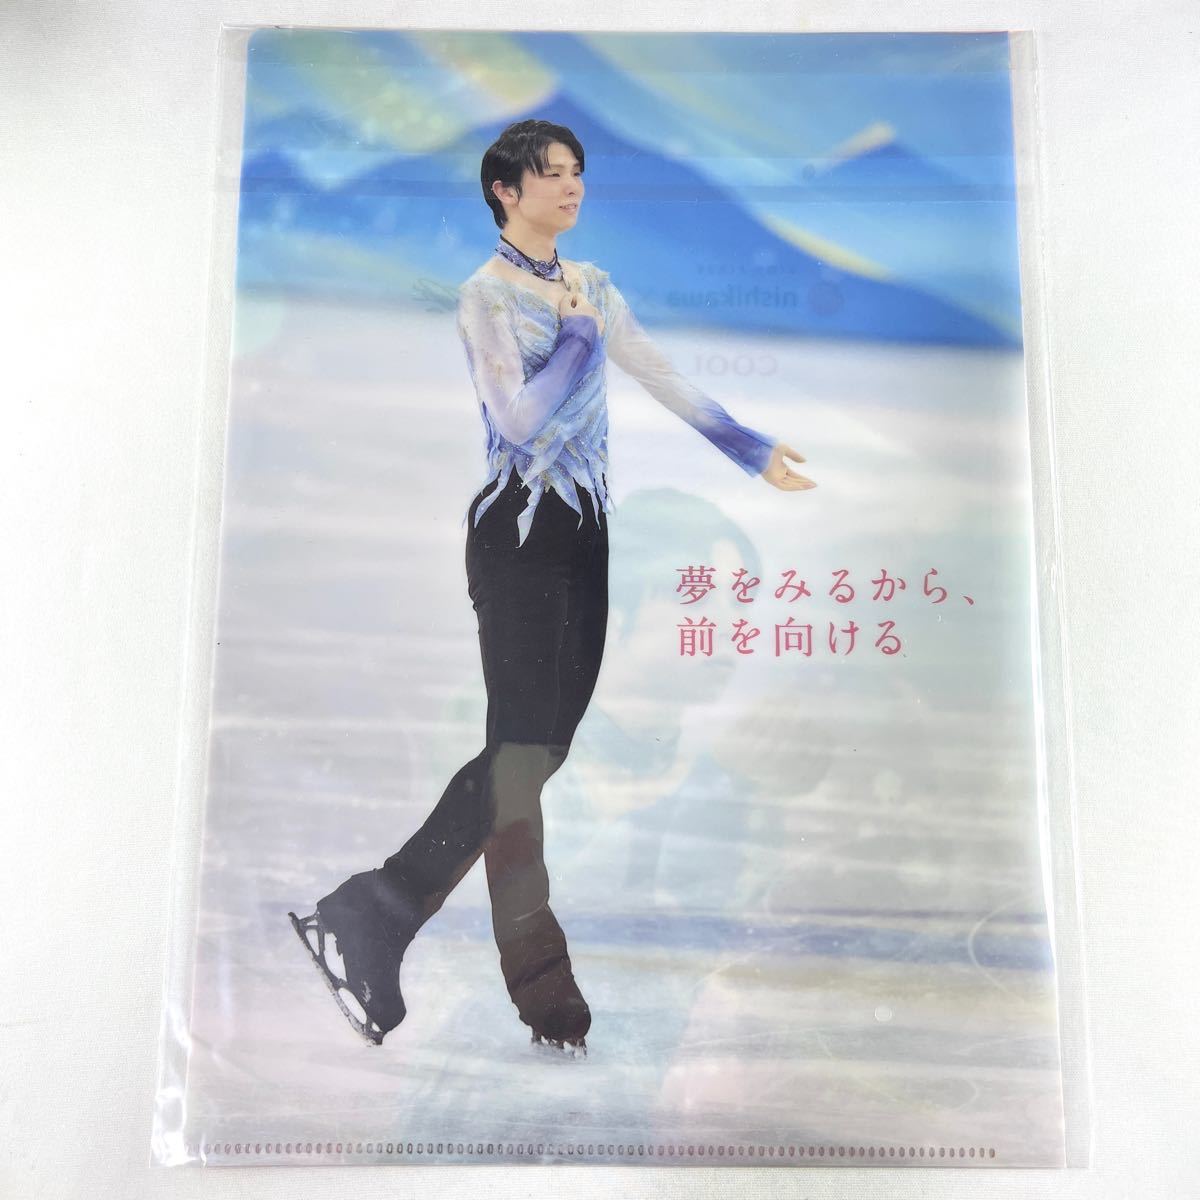 【非売品】羽生結弦選手 クリアファイル ピンク 西川 限定 フィギュアスケート